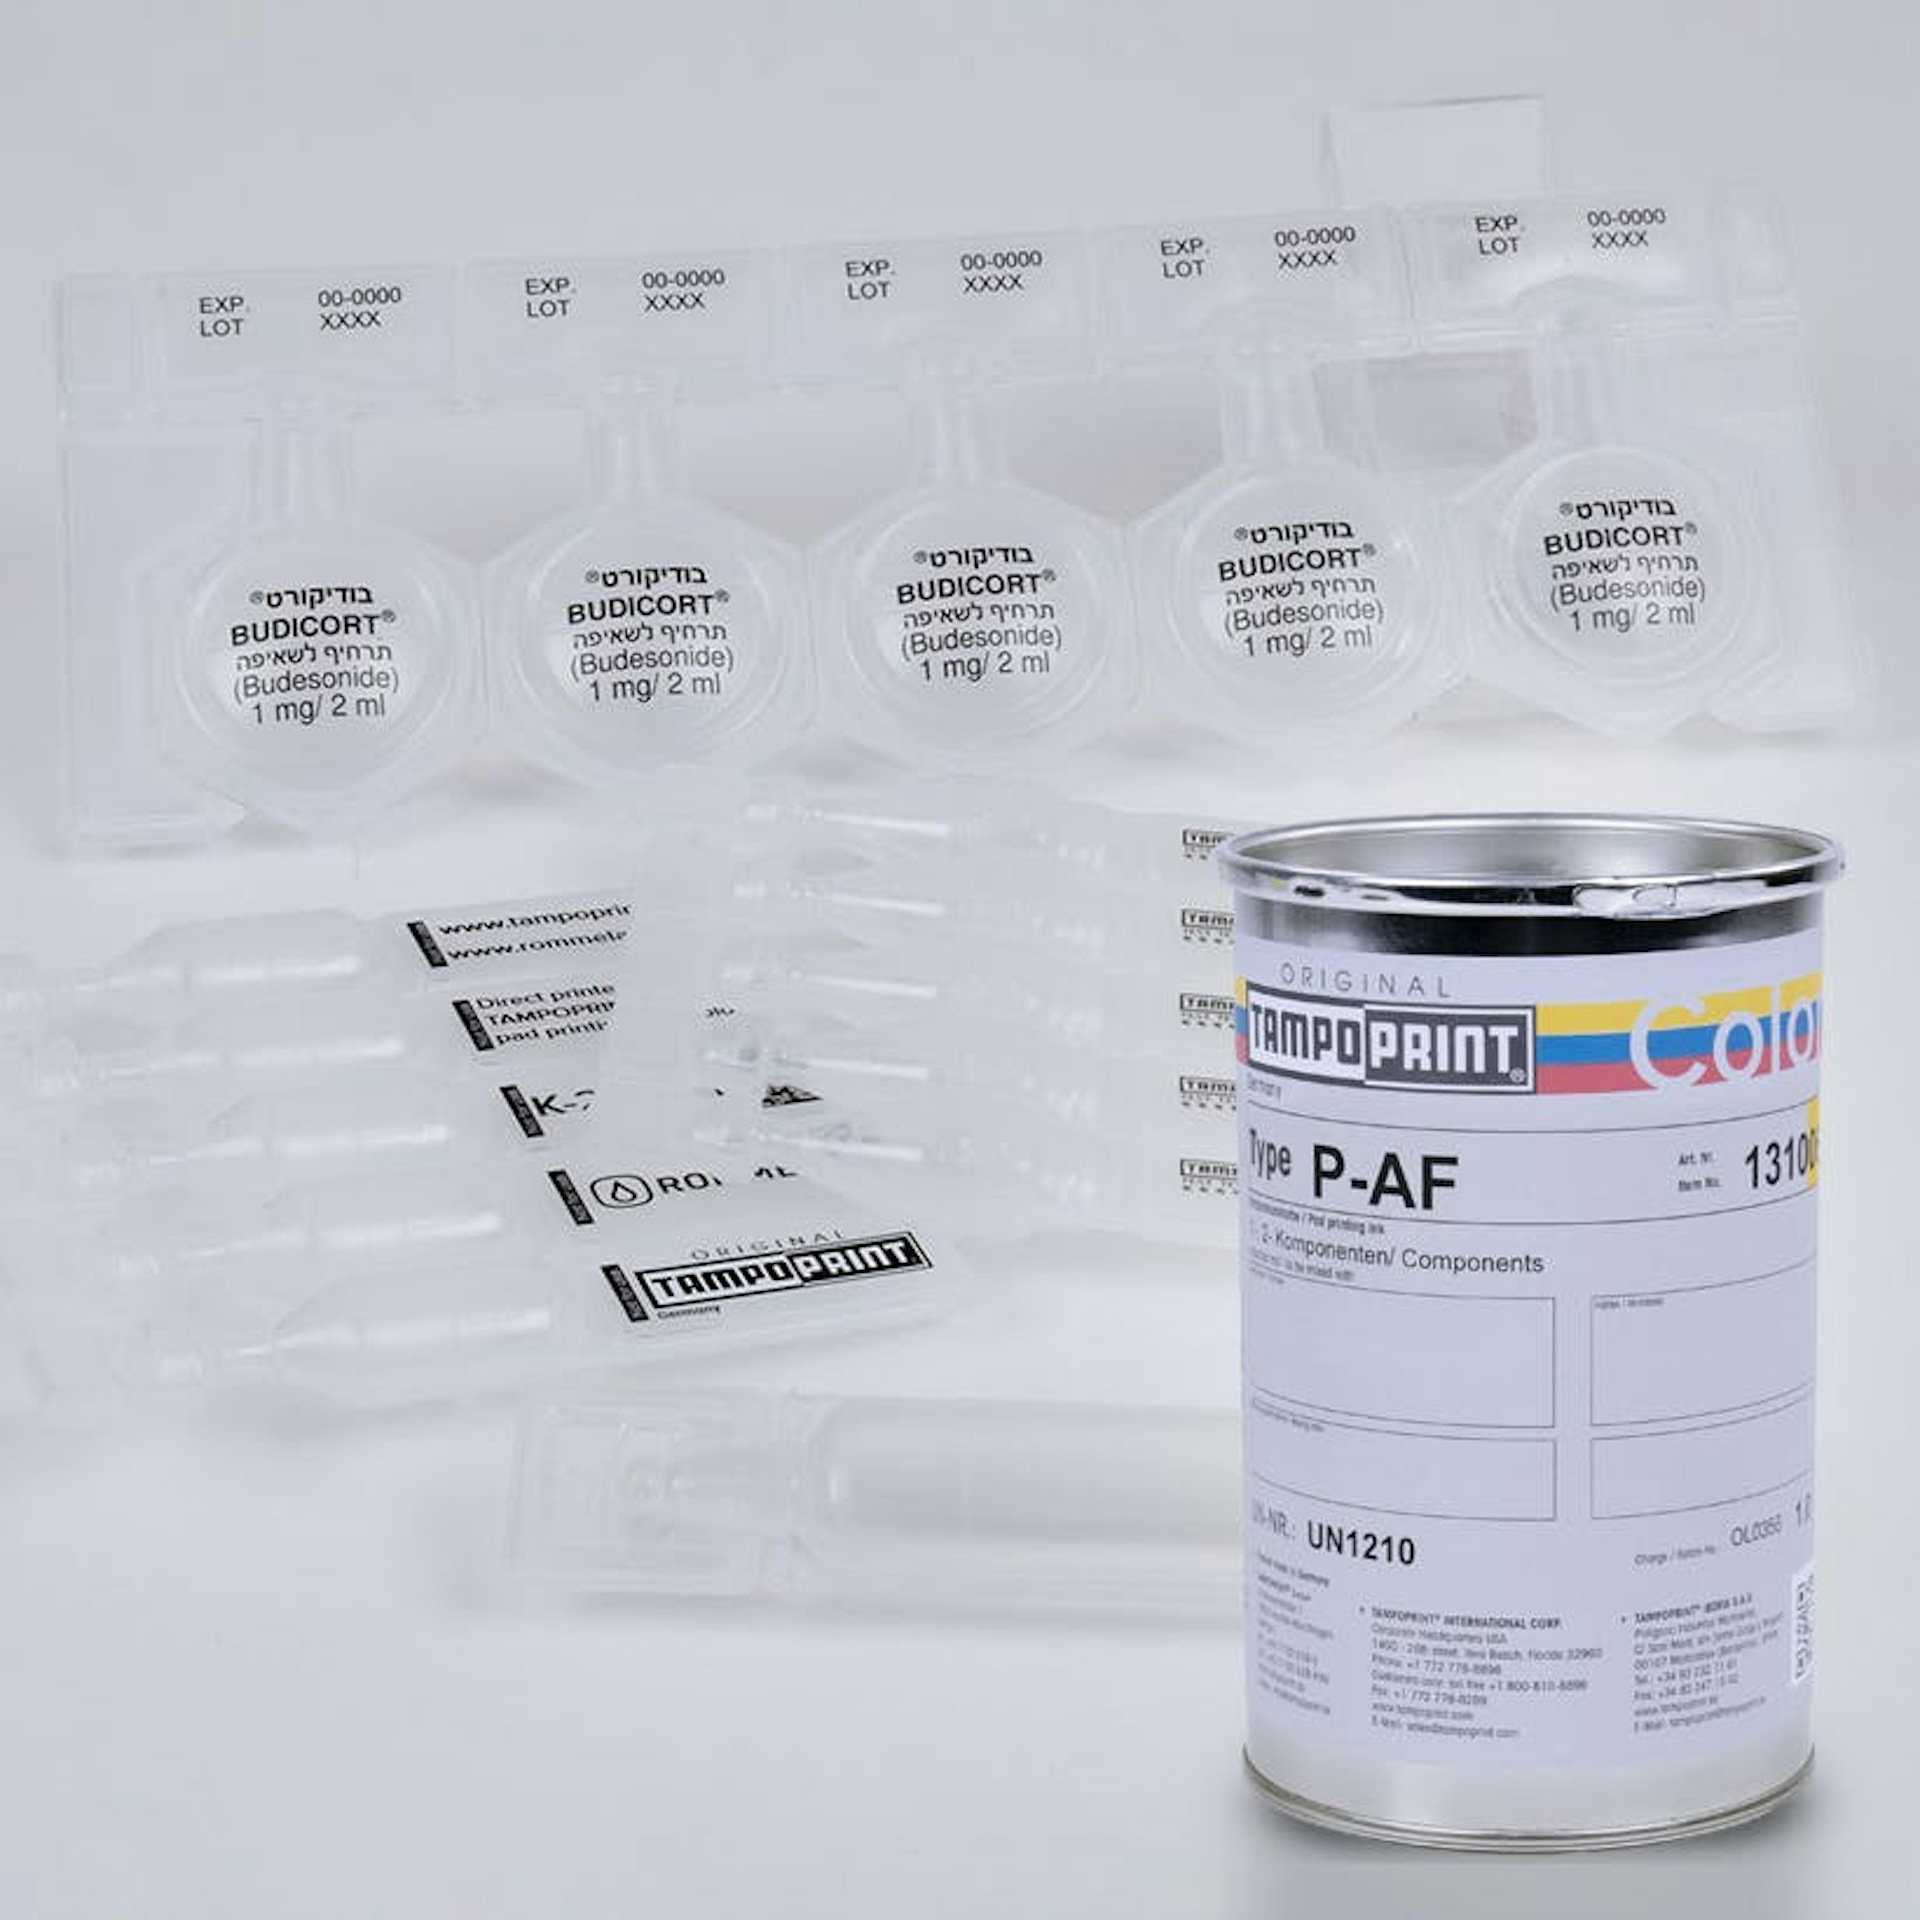 Eine Type P-AF Tampondruckfarbdose mit medizinischen Produkten im Hintergrund.